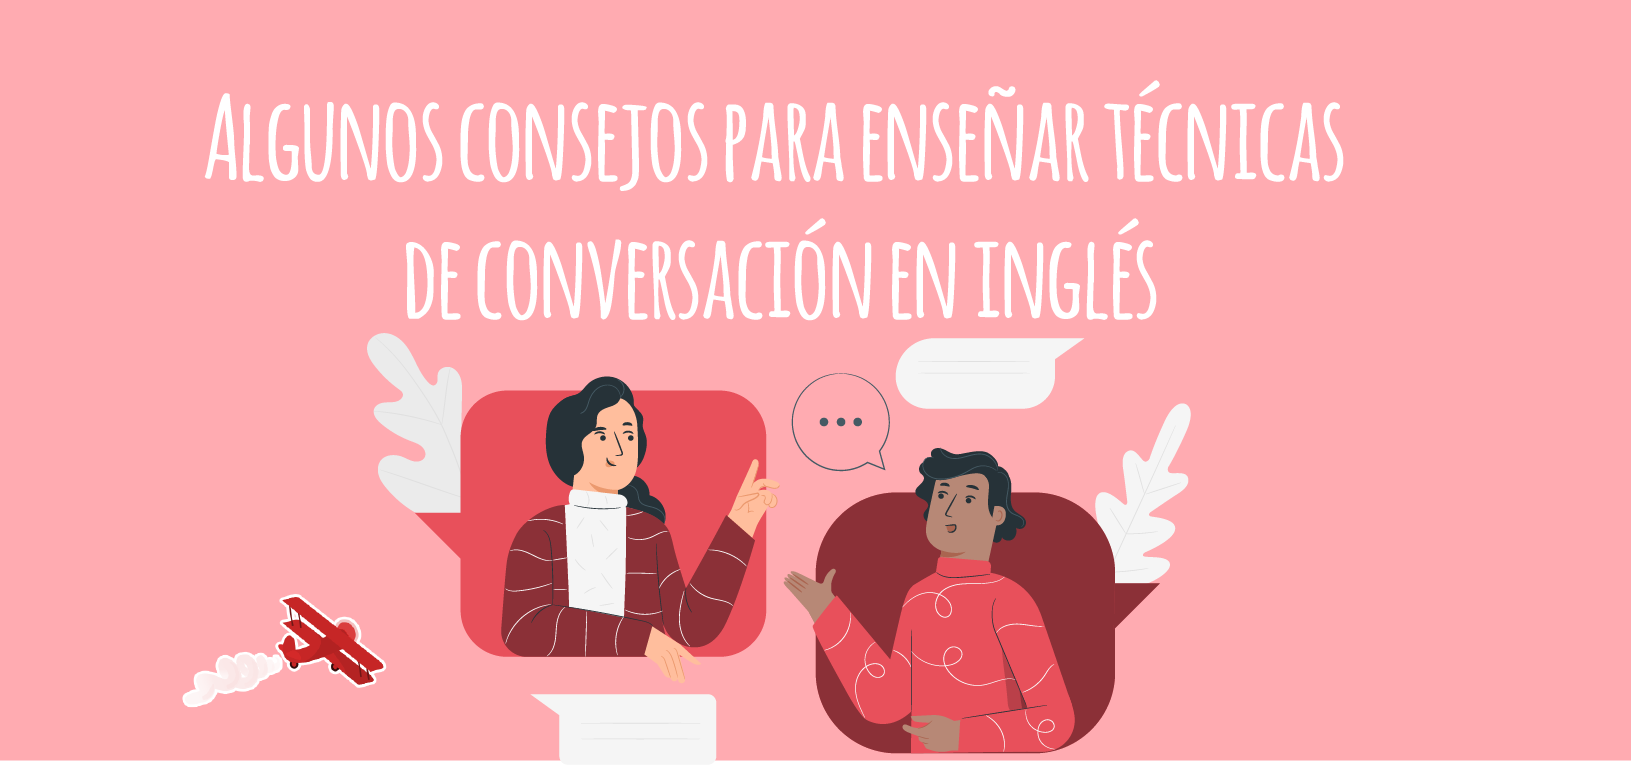 Algunos consejos para enseñar técnicas de conversación en inglés -  